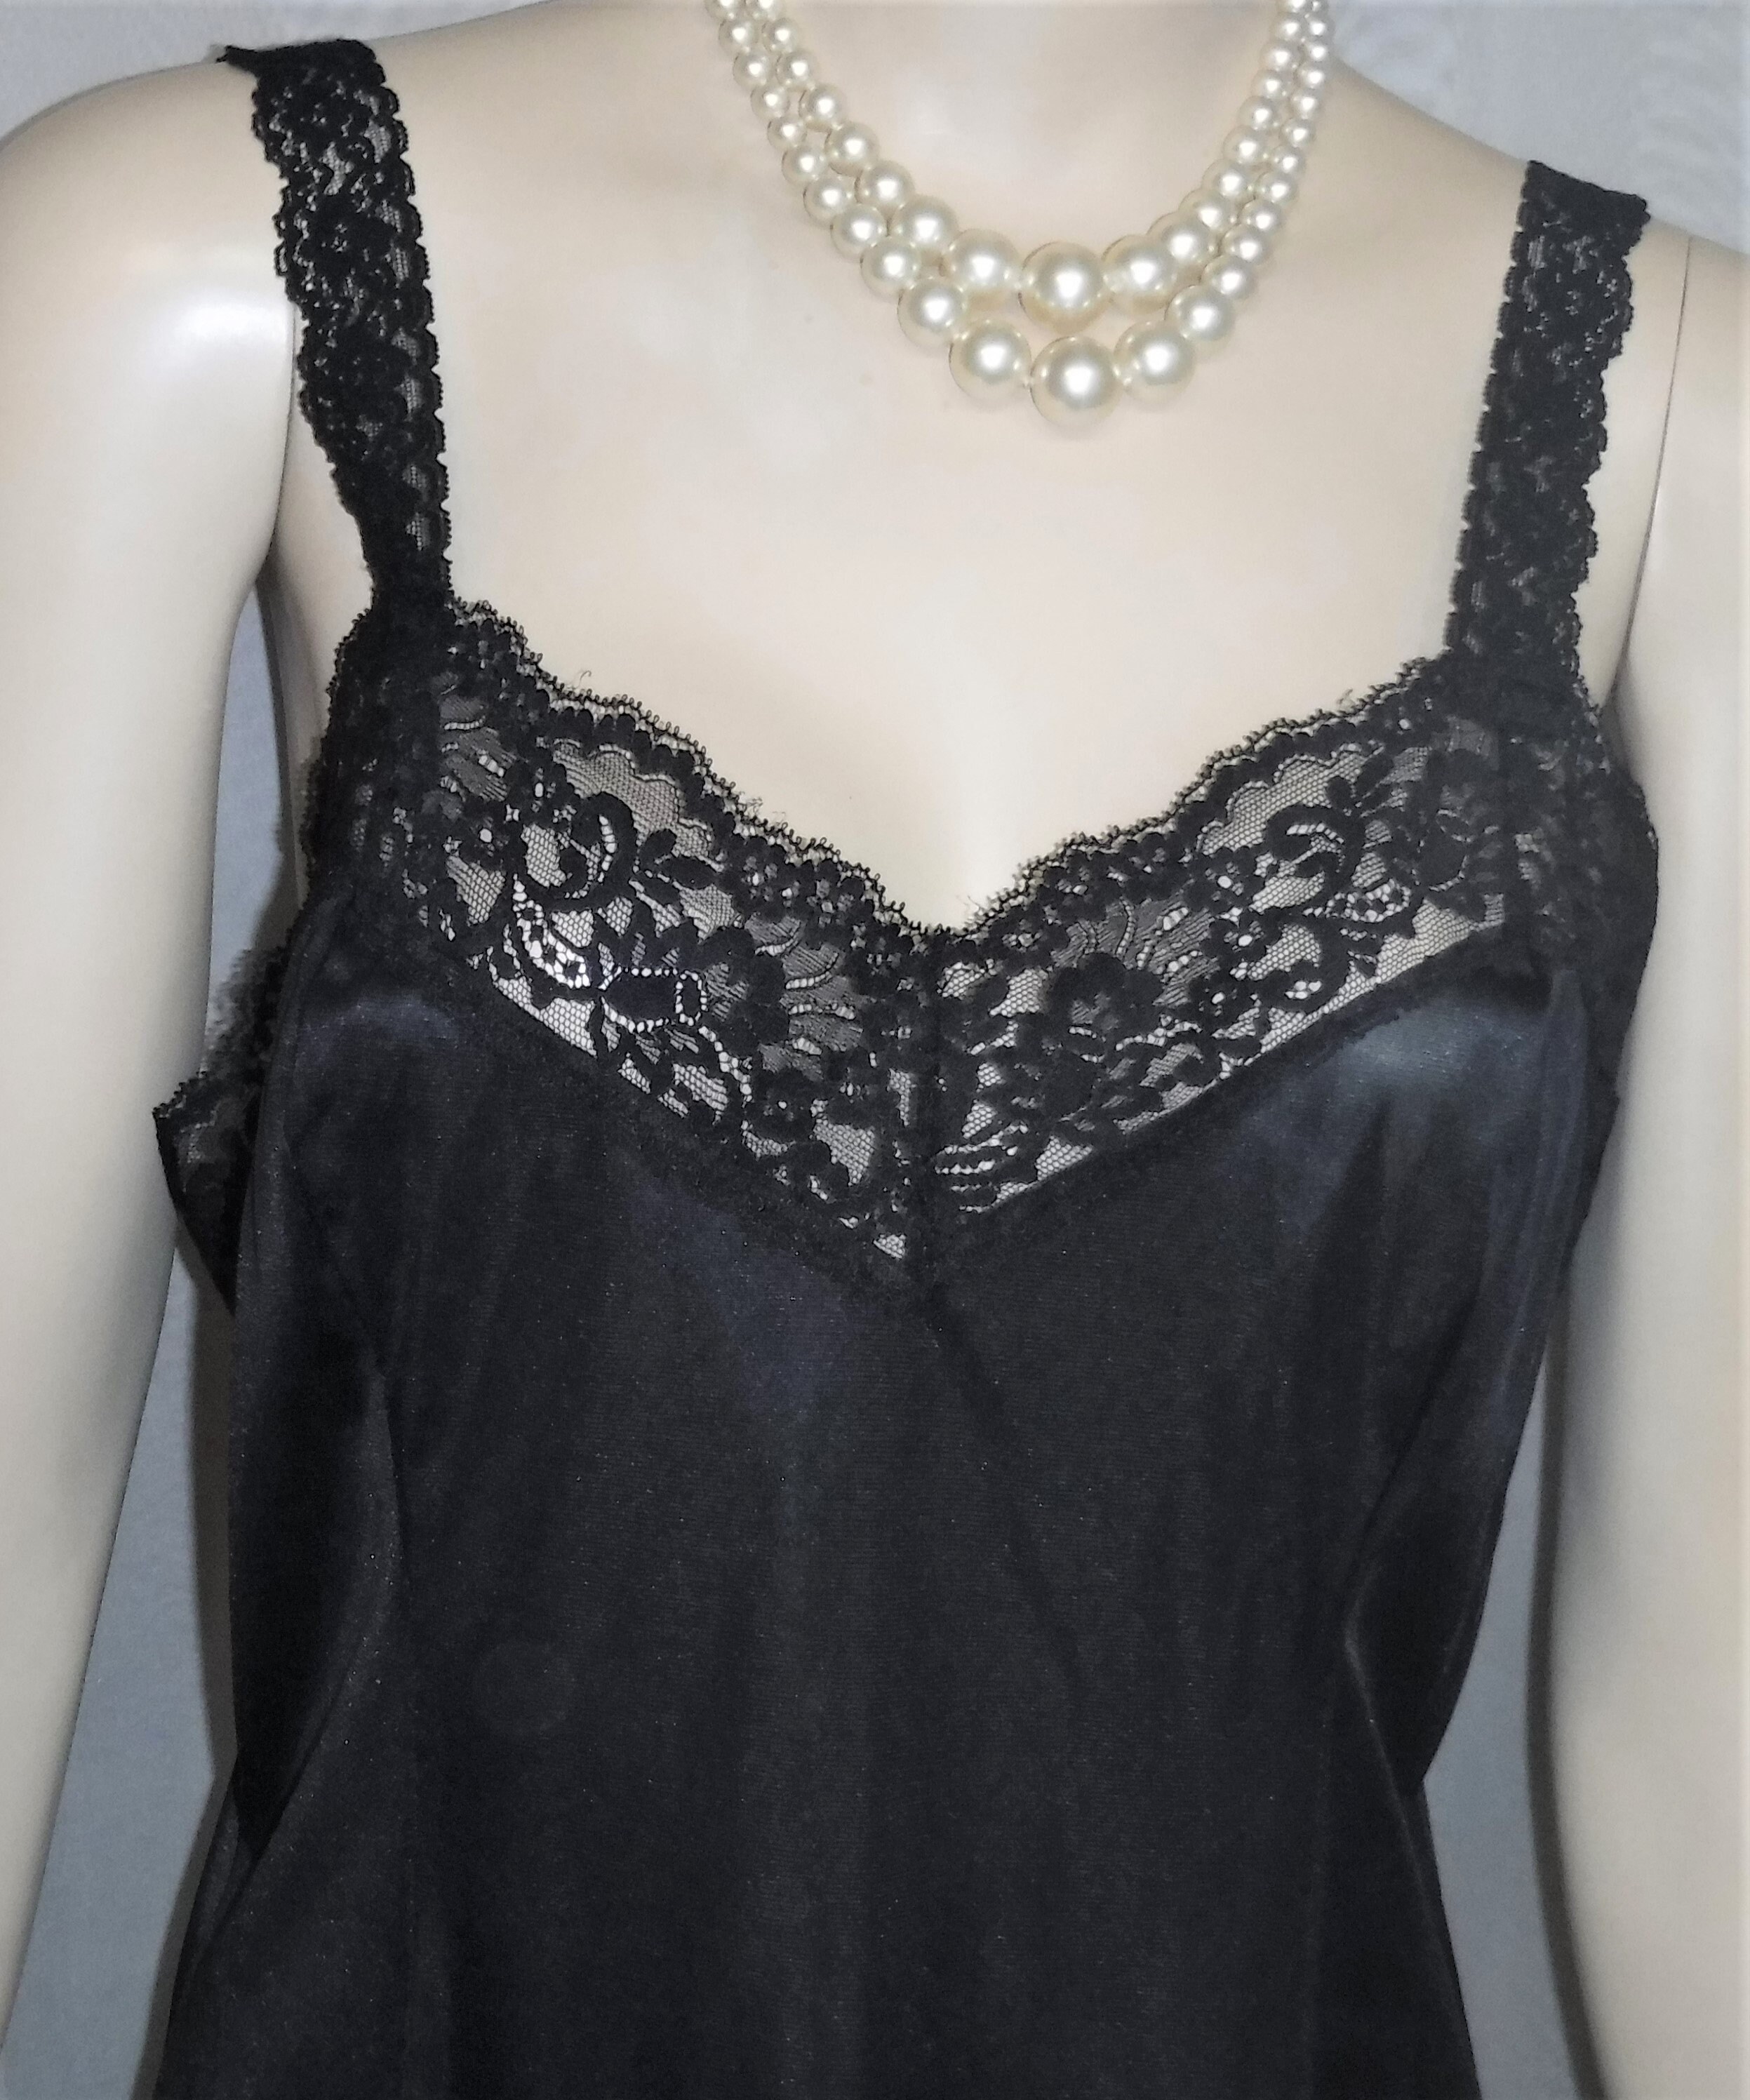 Vintage Wonder Maid Black Nylon Camisole Size 38 Style 6924 | Etsy